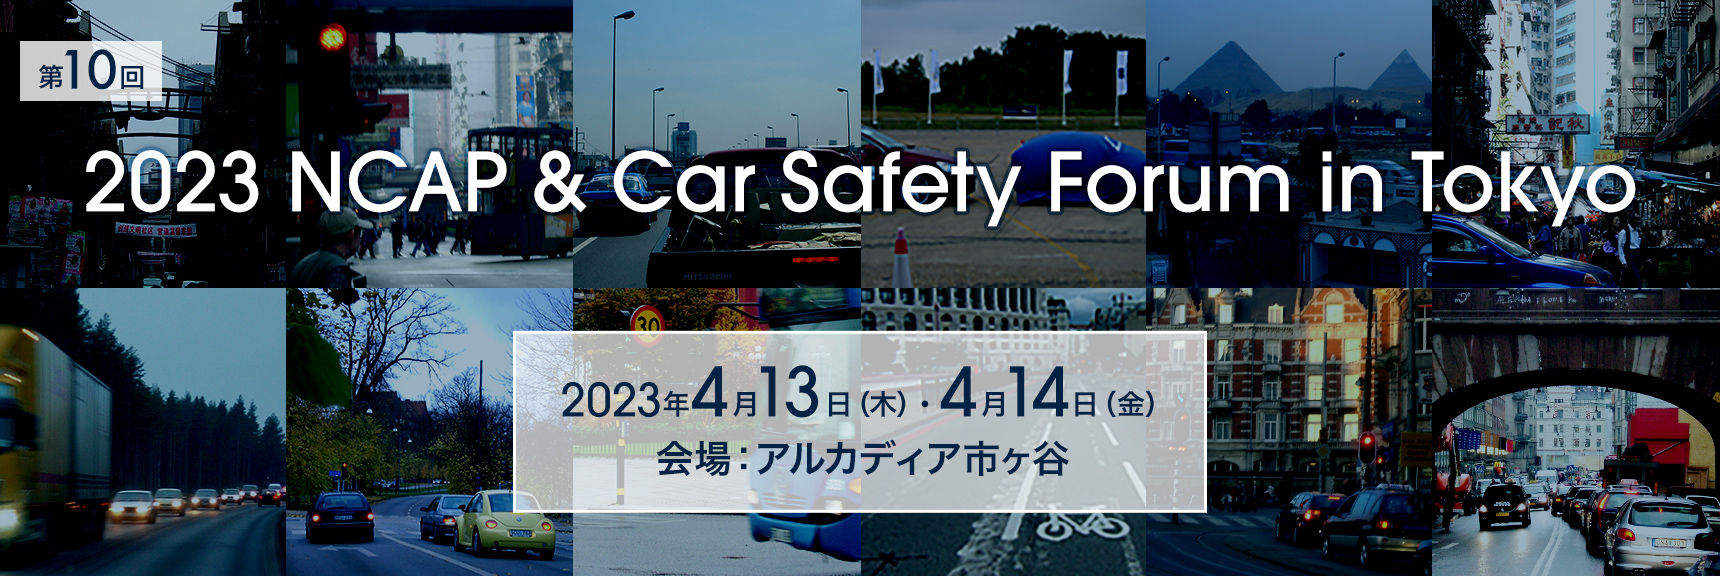 第10回「2023 NCAP & Car Safety Forum in Tokyo」